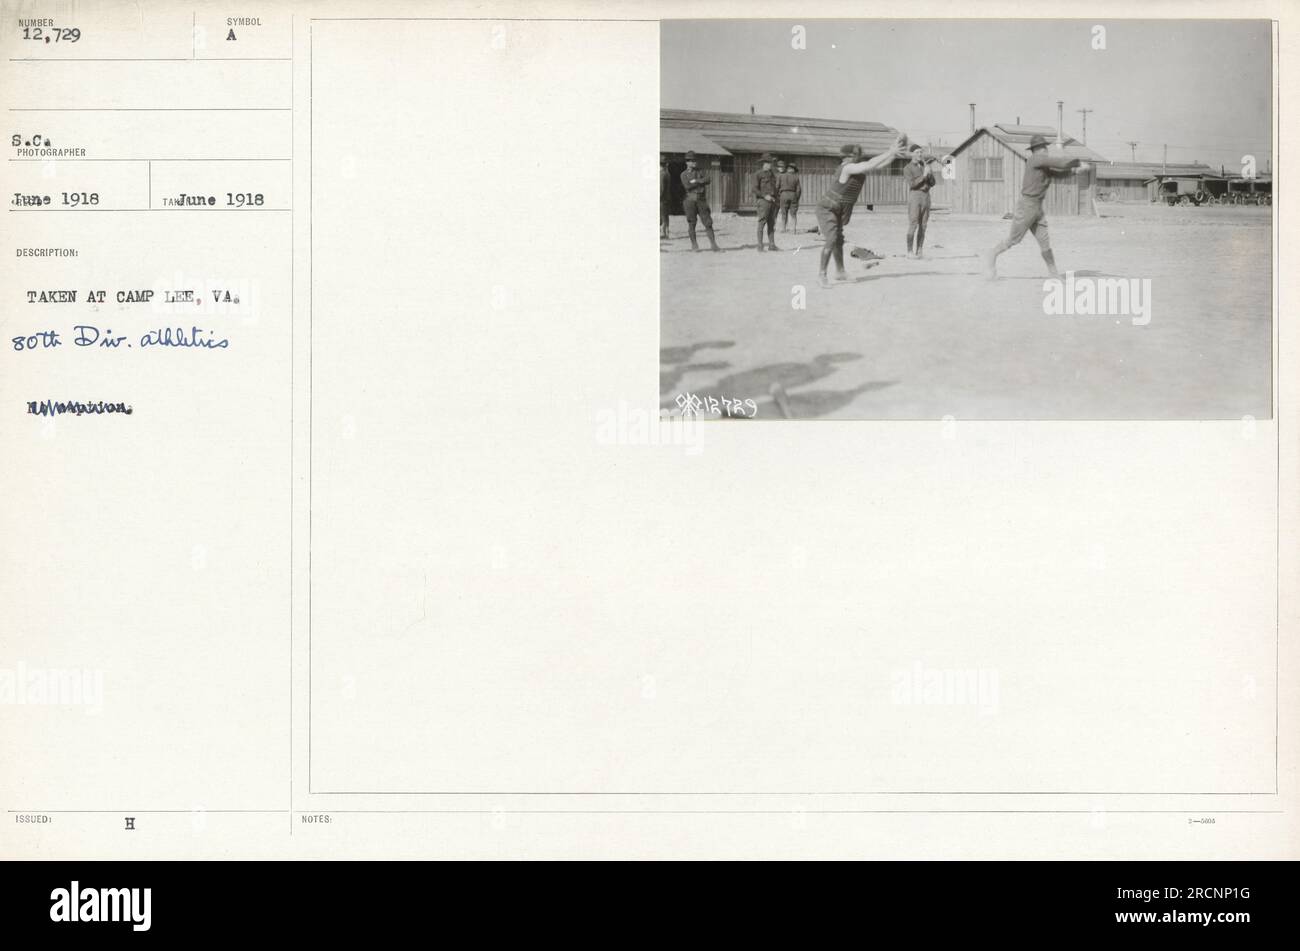 I soldati della 32nd Division partecipano all'atletica leggera a Camp Lee, Virginia, nel giugno 1918. L'immagine mostra che si impegnano in vari sport e attività fisiche come parte del loro addestramento militare. Foto Stock